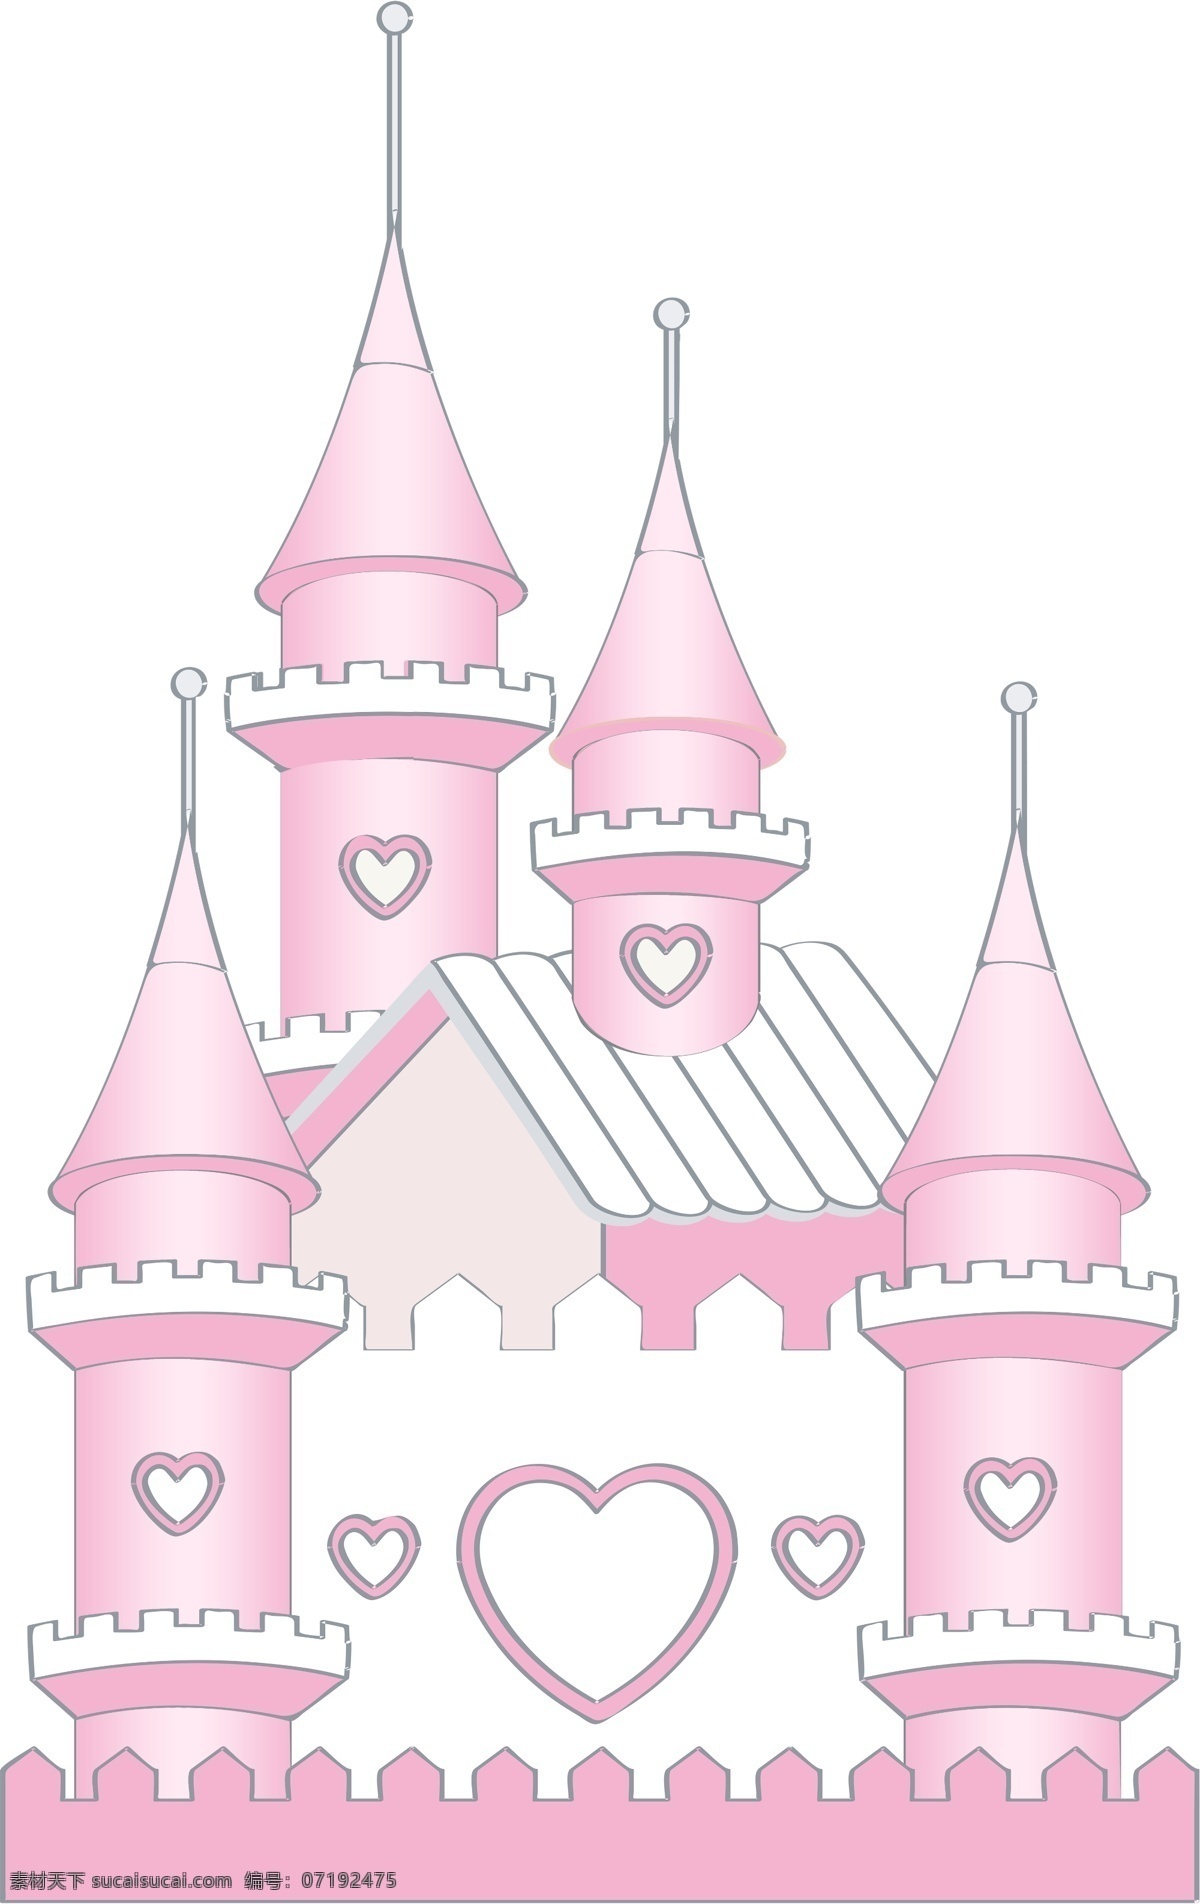 粉色城堡 粉色 卡通 可爱 城堡 婚礼 婚庆 庆典 典礼 宝宝宴宴会 宝宝 生日 周岁 百 天城 堡 浪漫城堡 温馨浪漫粉